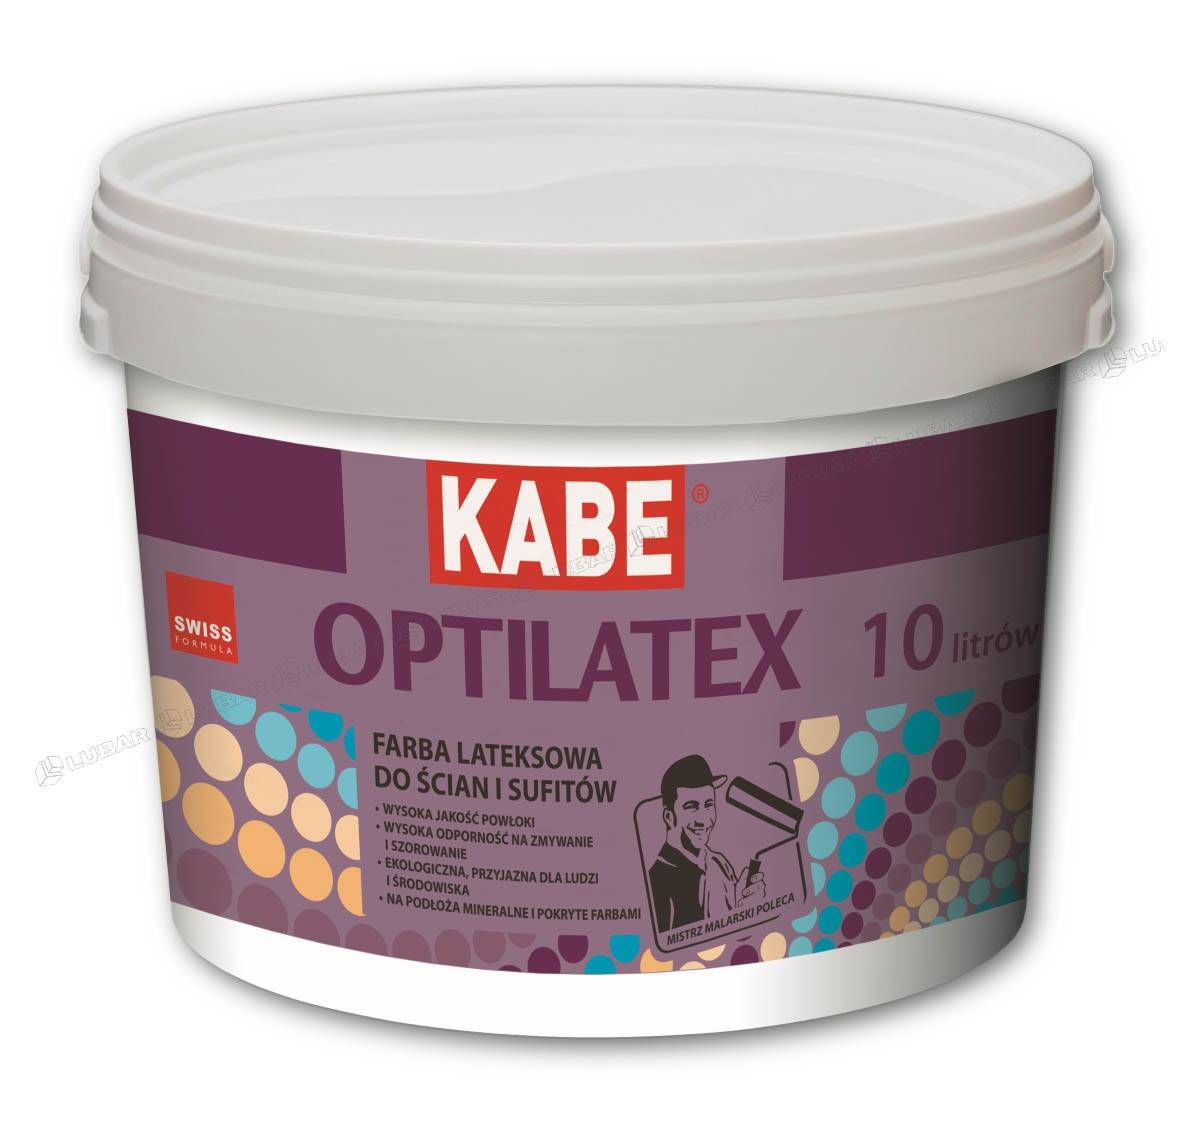 OPTILATEX Farba lateksowa do ścian i sufitów 10l KABE